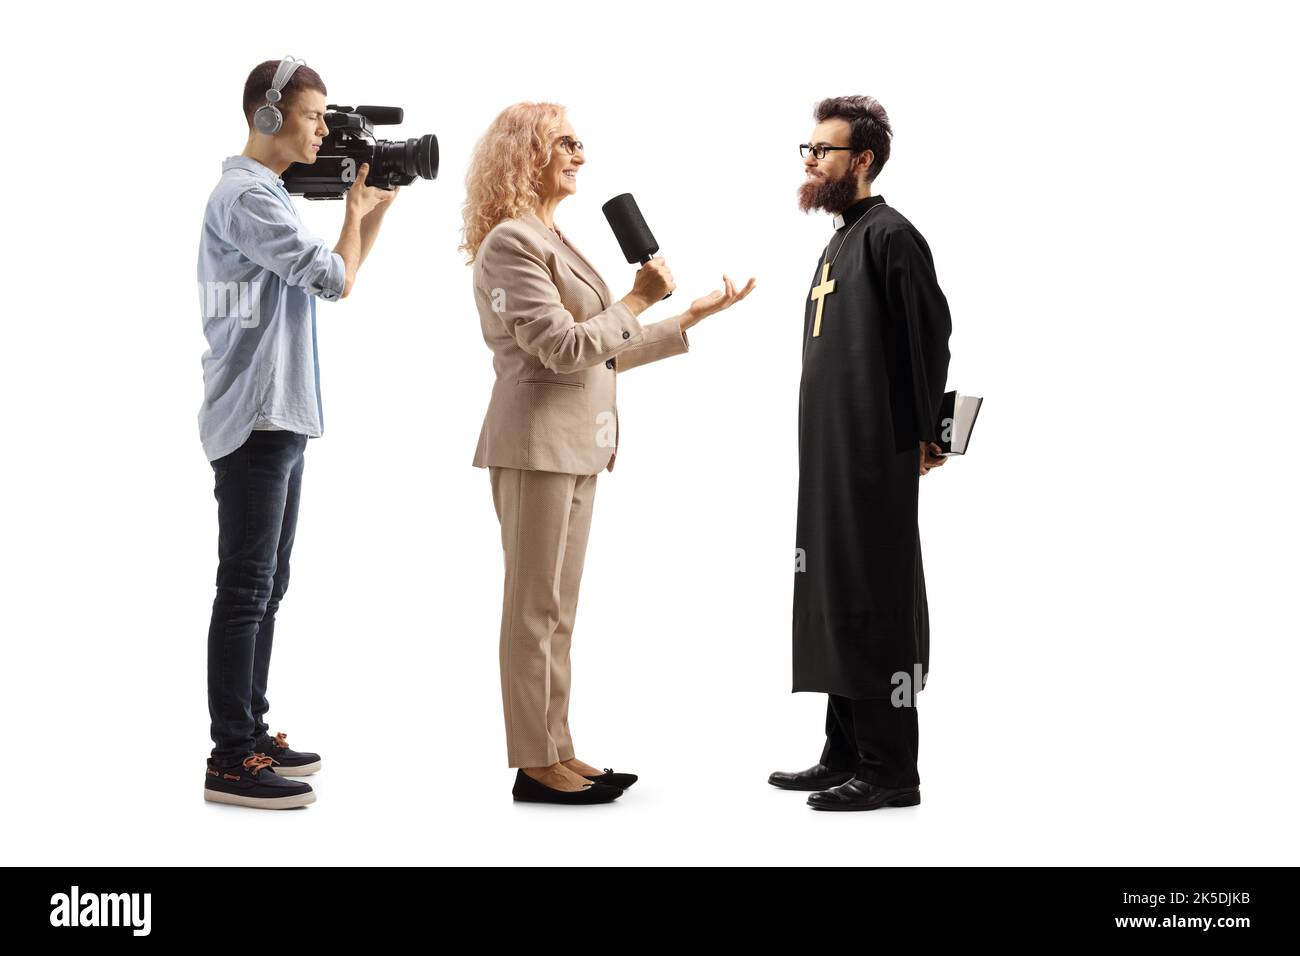 Eine Reporterin interviewte einen katholischen Priester und einen Kameramann, der isoliert auf weißem Hintergrund Aufnahmen Stockfoto